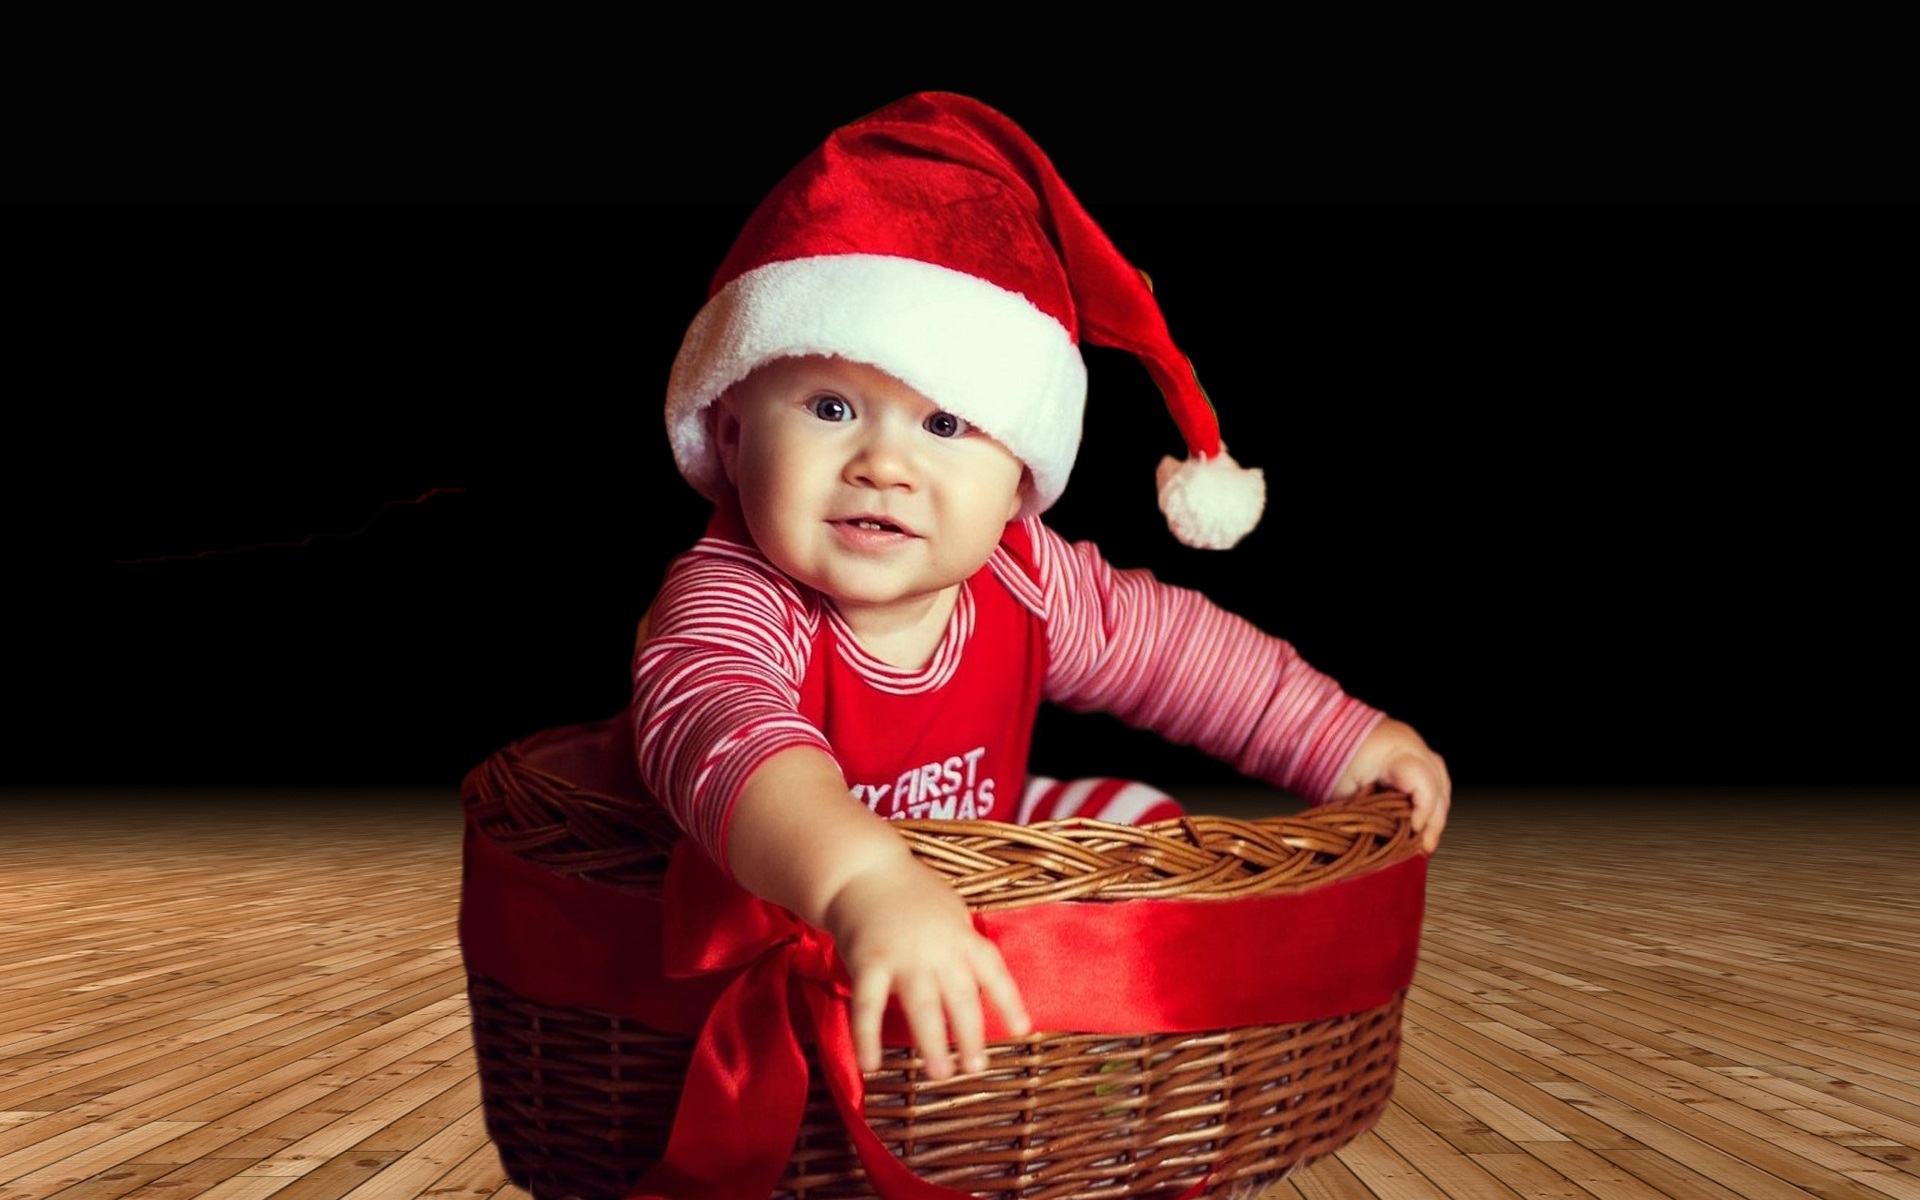 Cute Small Baby Wallpapers - Baby Santa Claus Hd - HD Wallpaper 